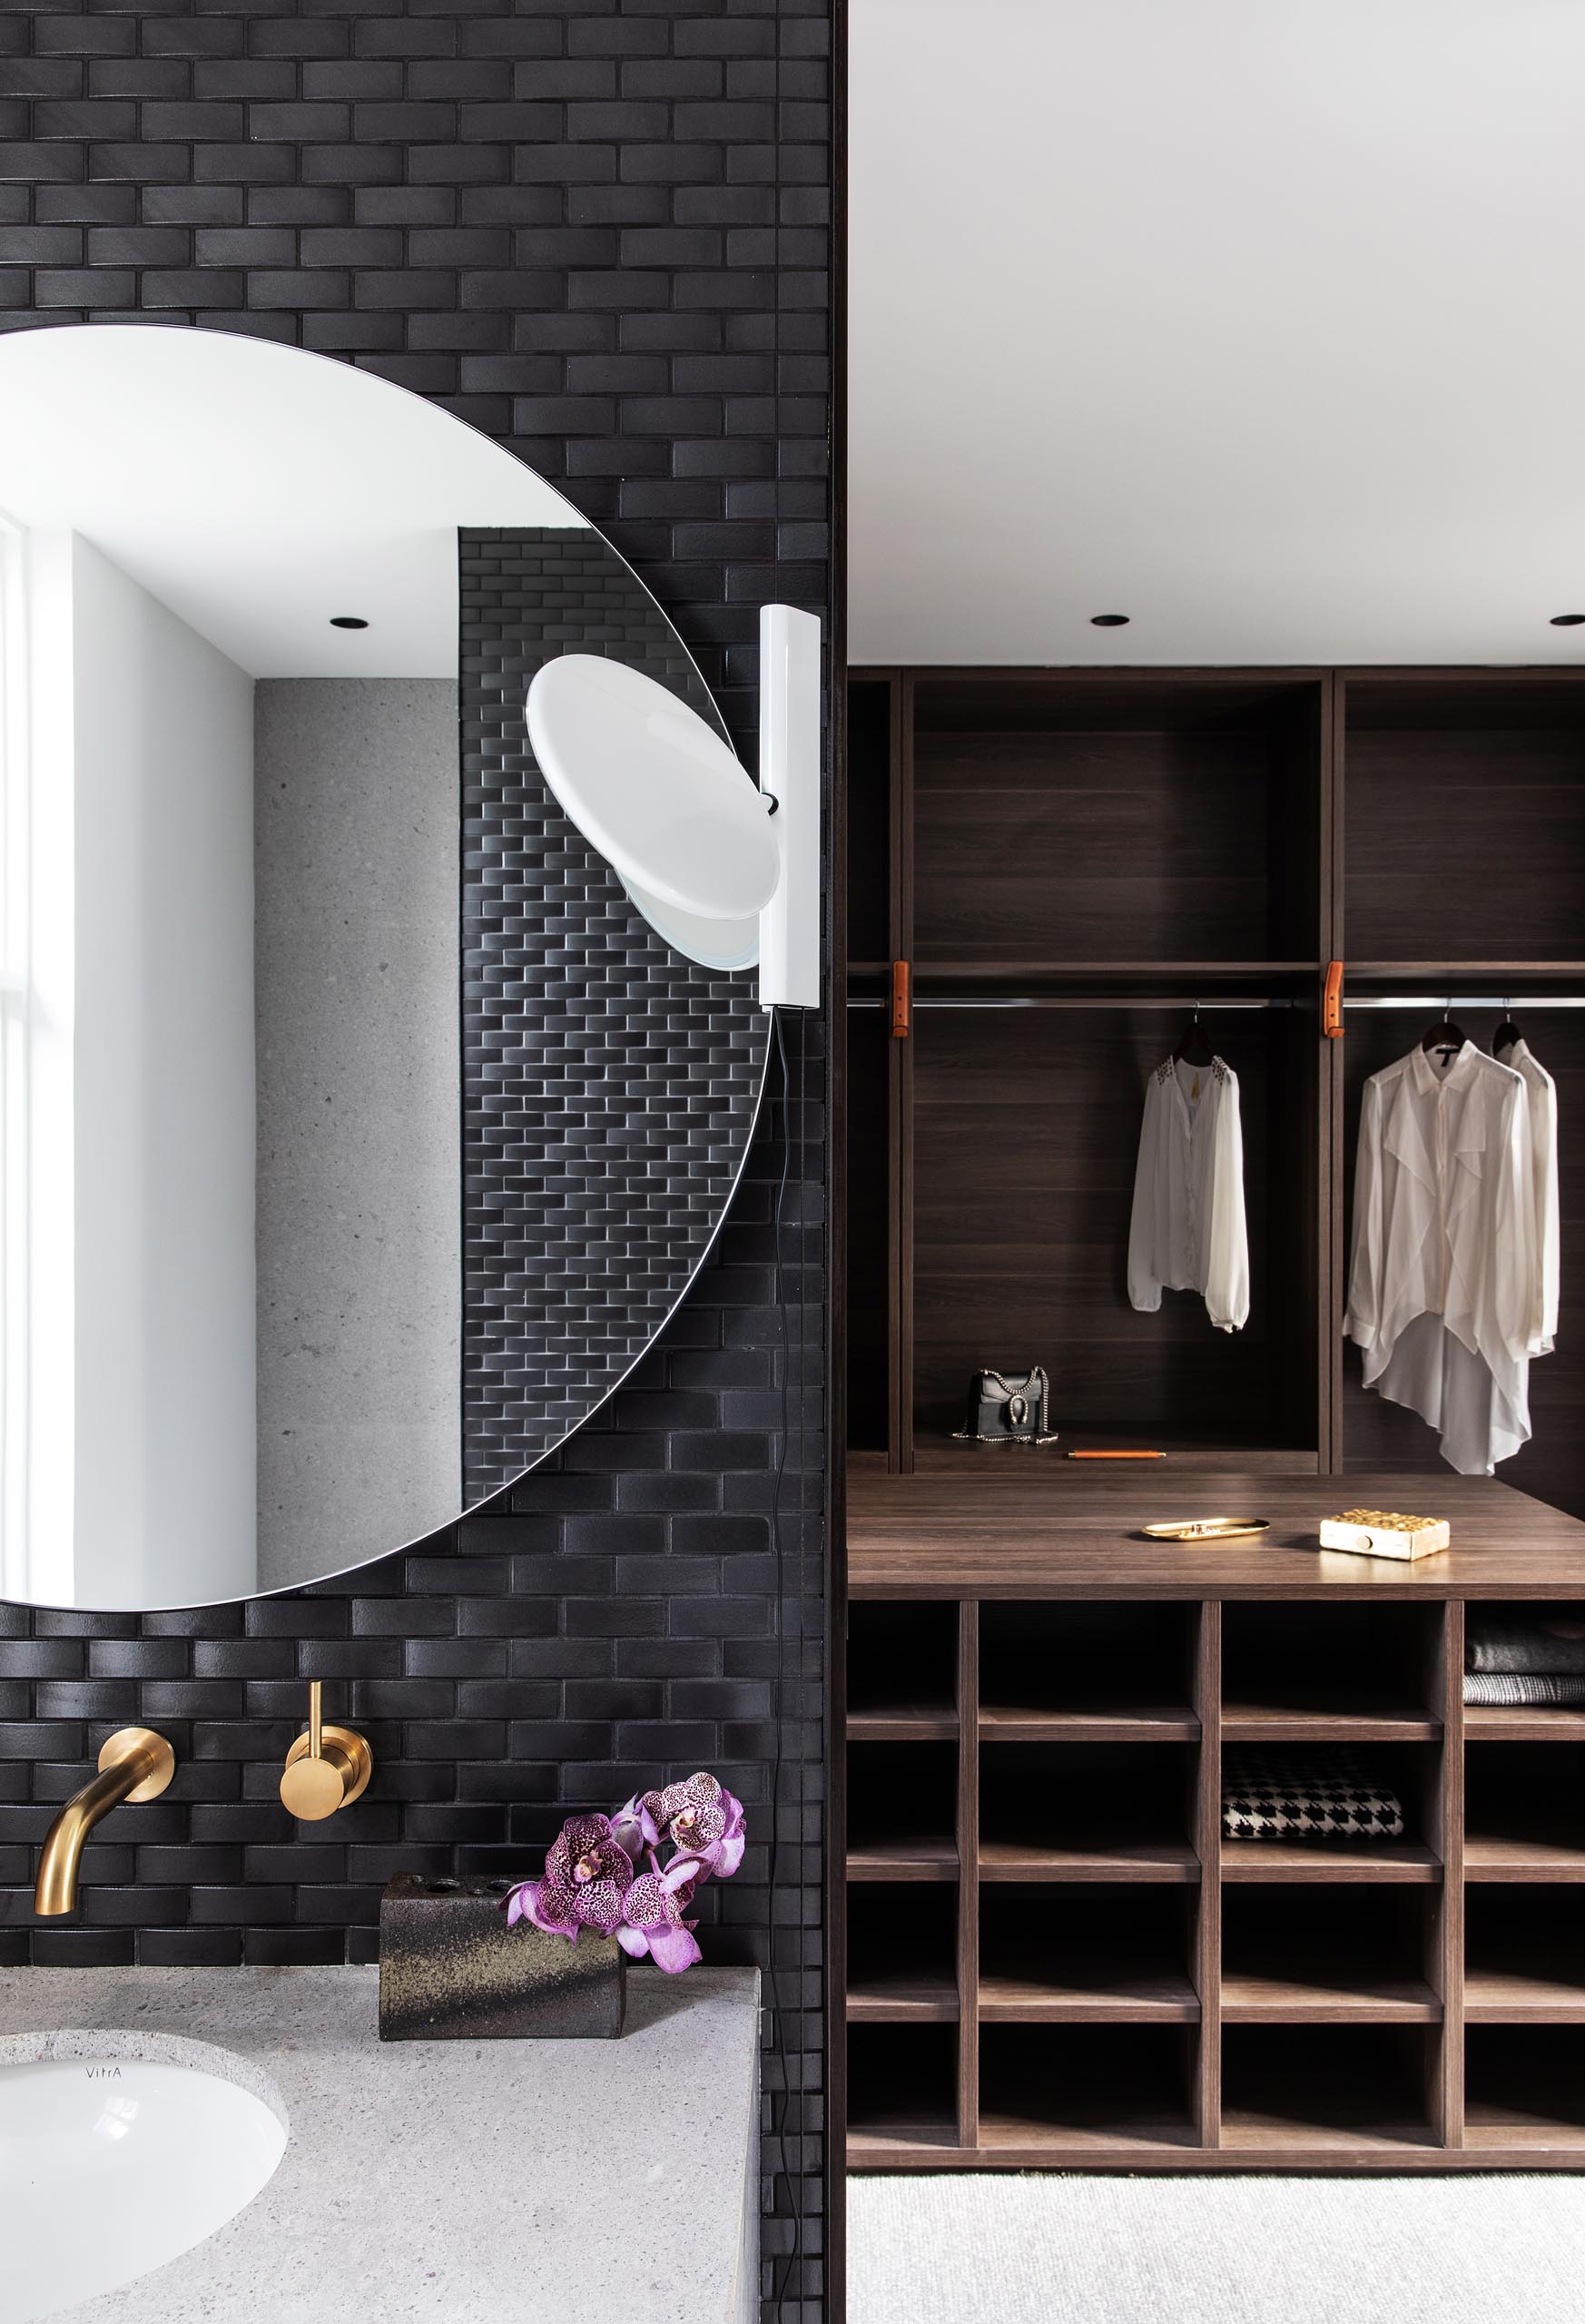 В главной ванной комнате стены покрыты черной плиткой, а круглые зеркала висят над белыми туалетными столиками с раковинами под ними. Также есть гардеробная с мебелью из темного дерева.